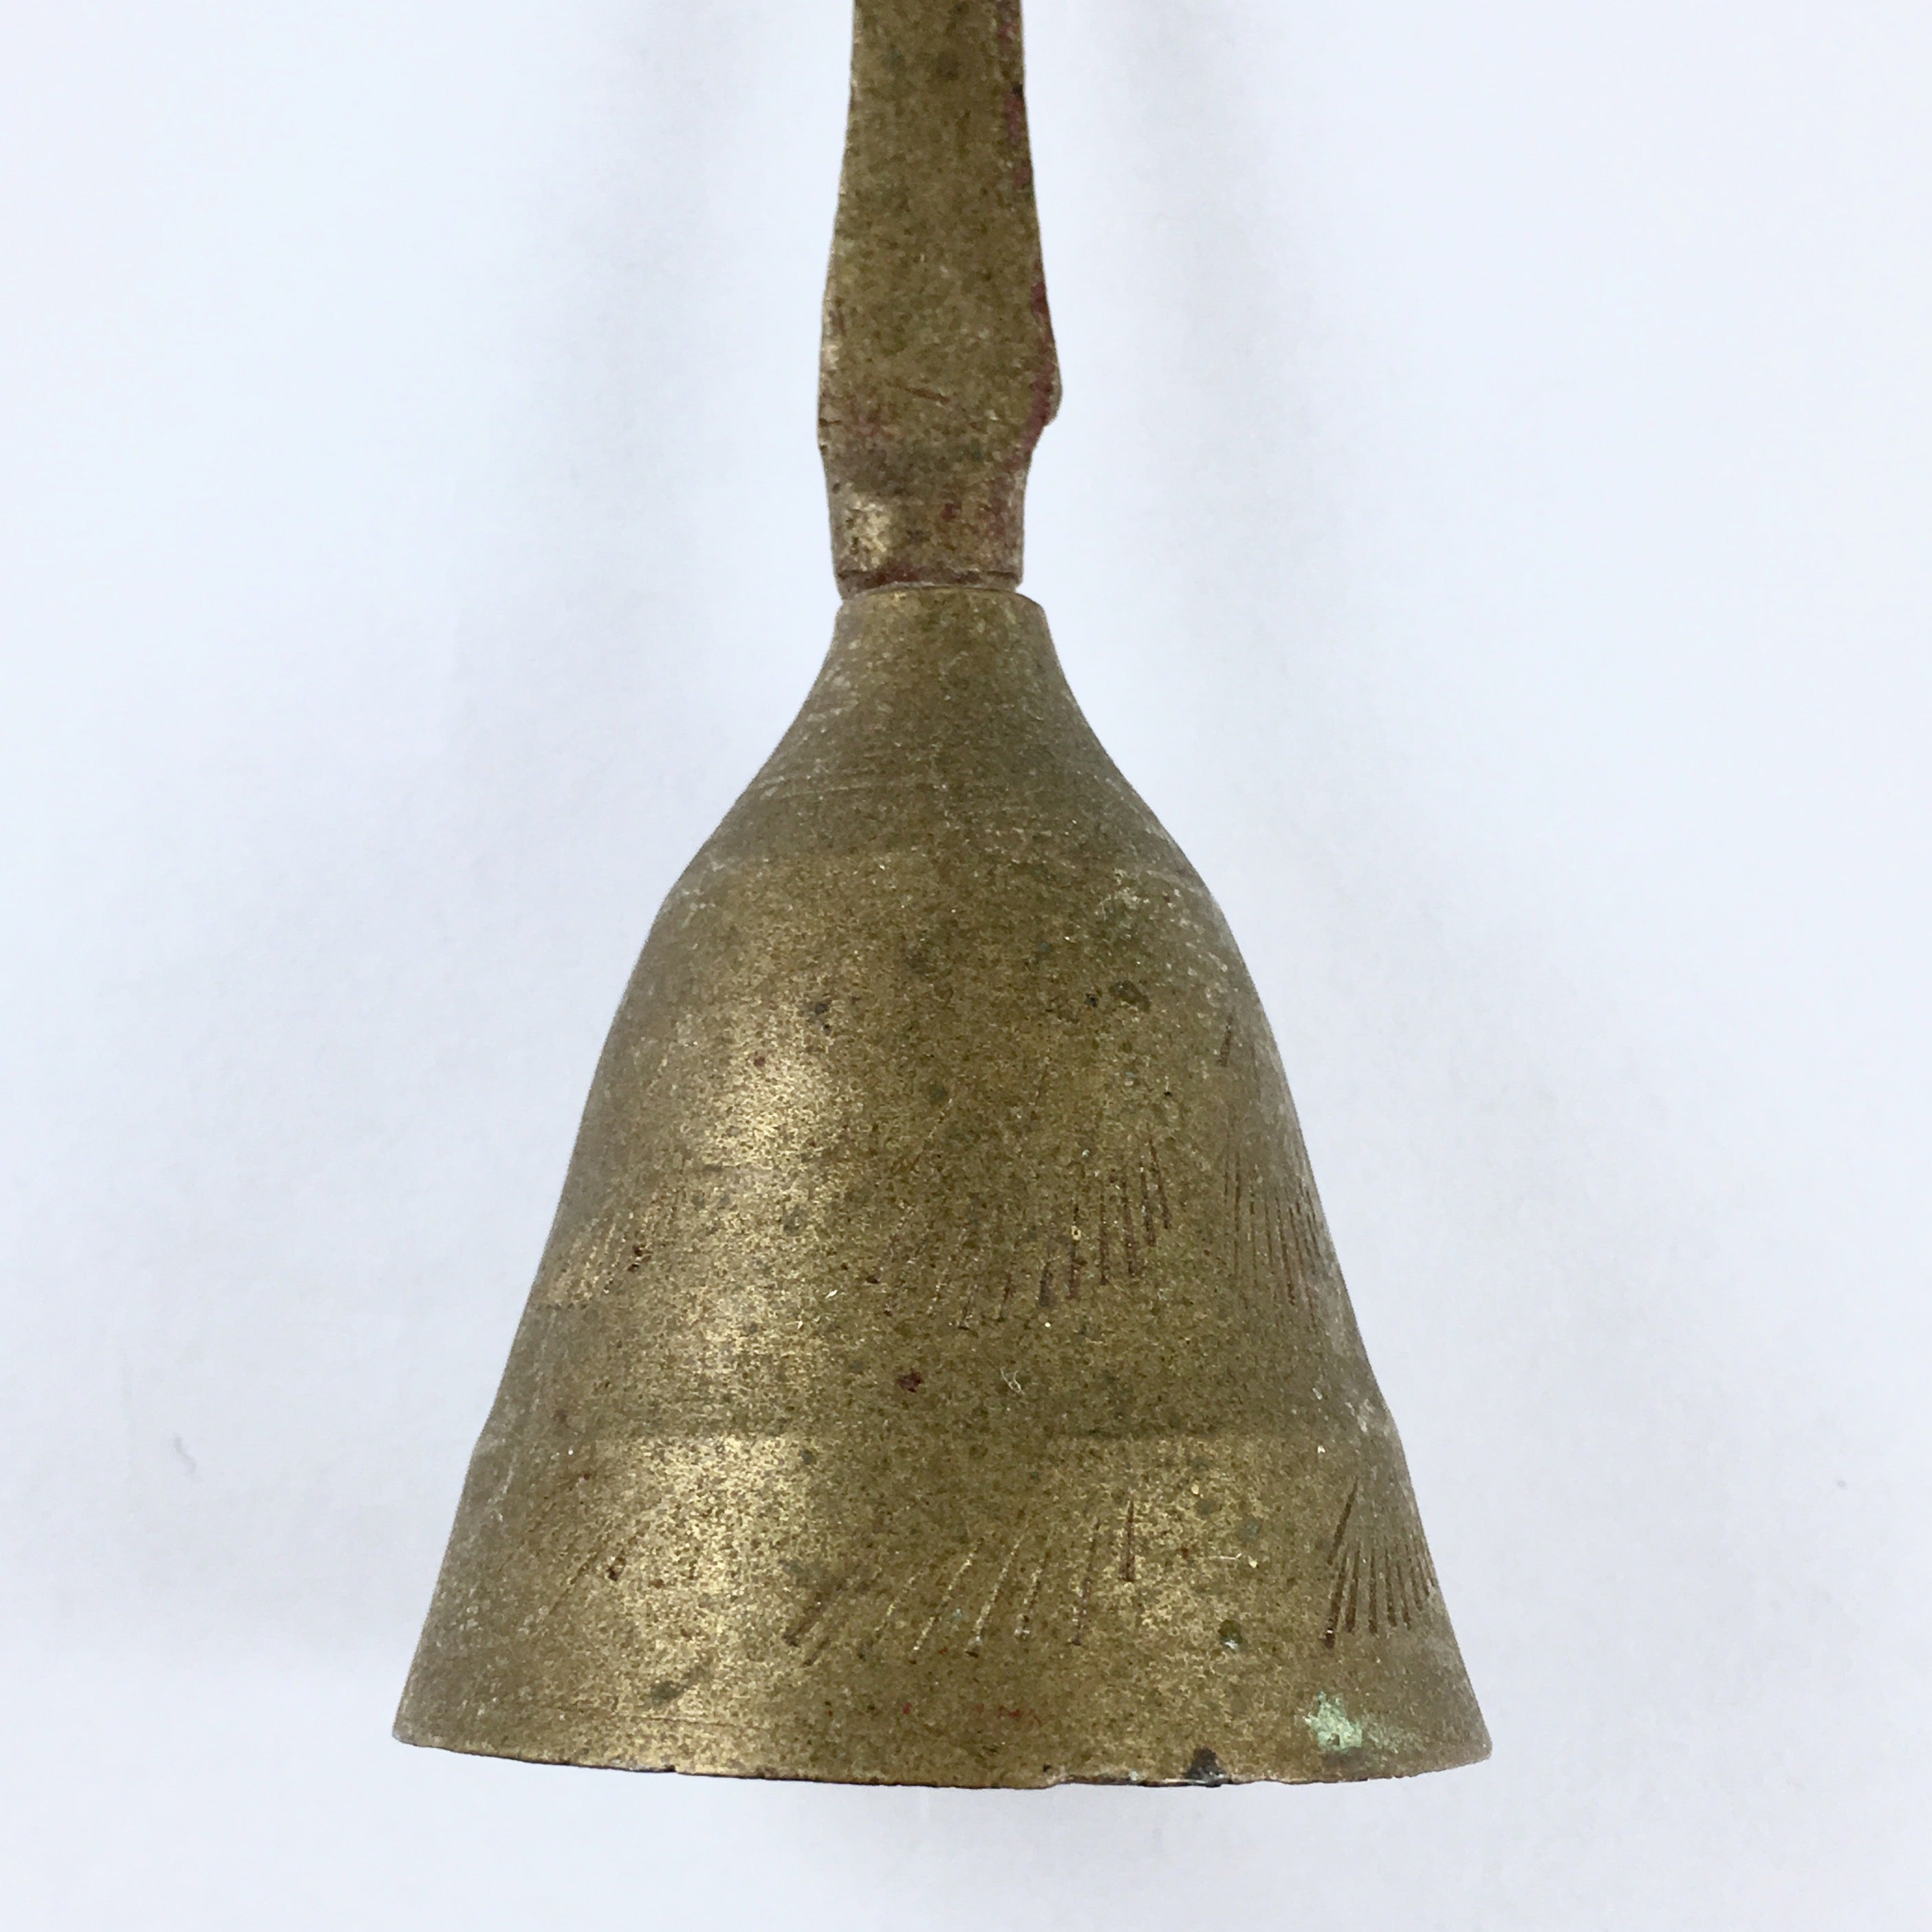 Brass Bell - Small